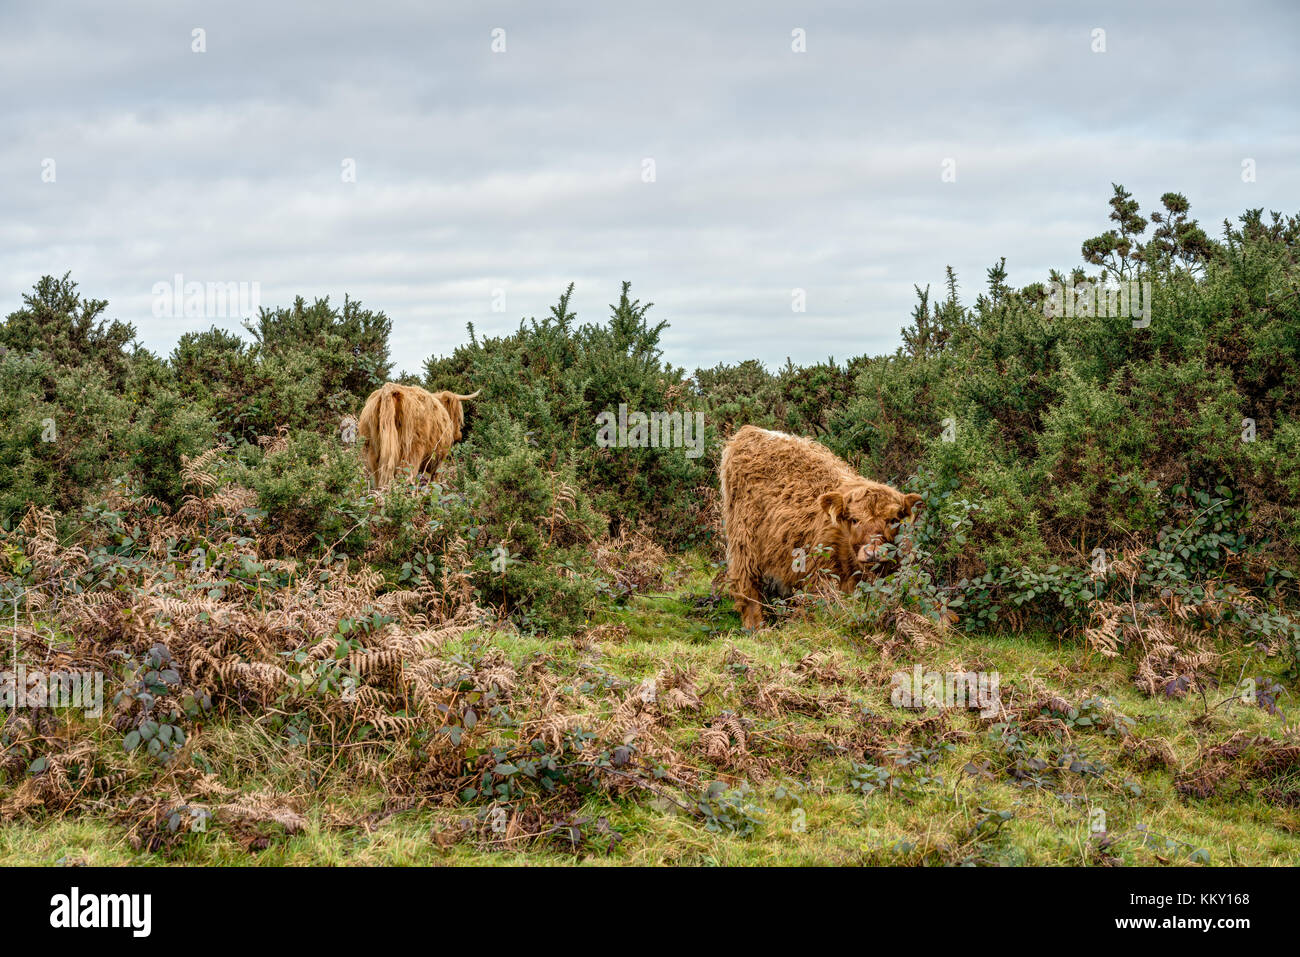 Una escena rural de dos scottish highland ganado pastando entre retamas densos arbustos en las bajadas, el ternero mirando hacia la cámara, madre cerca. Foto de stock